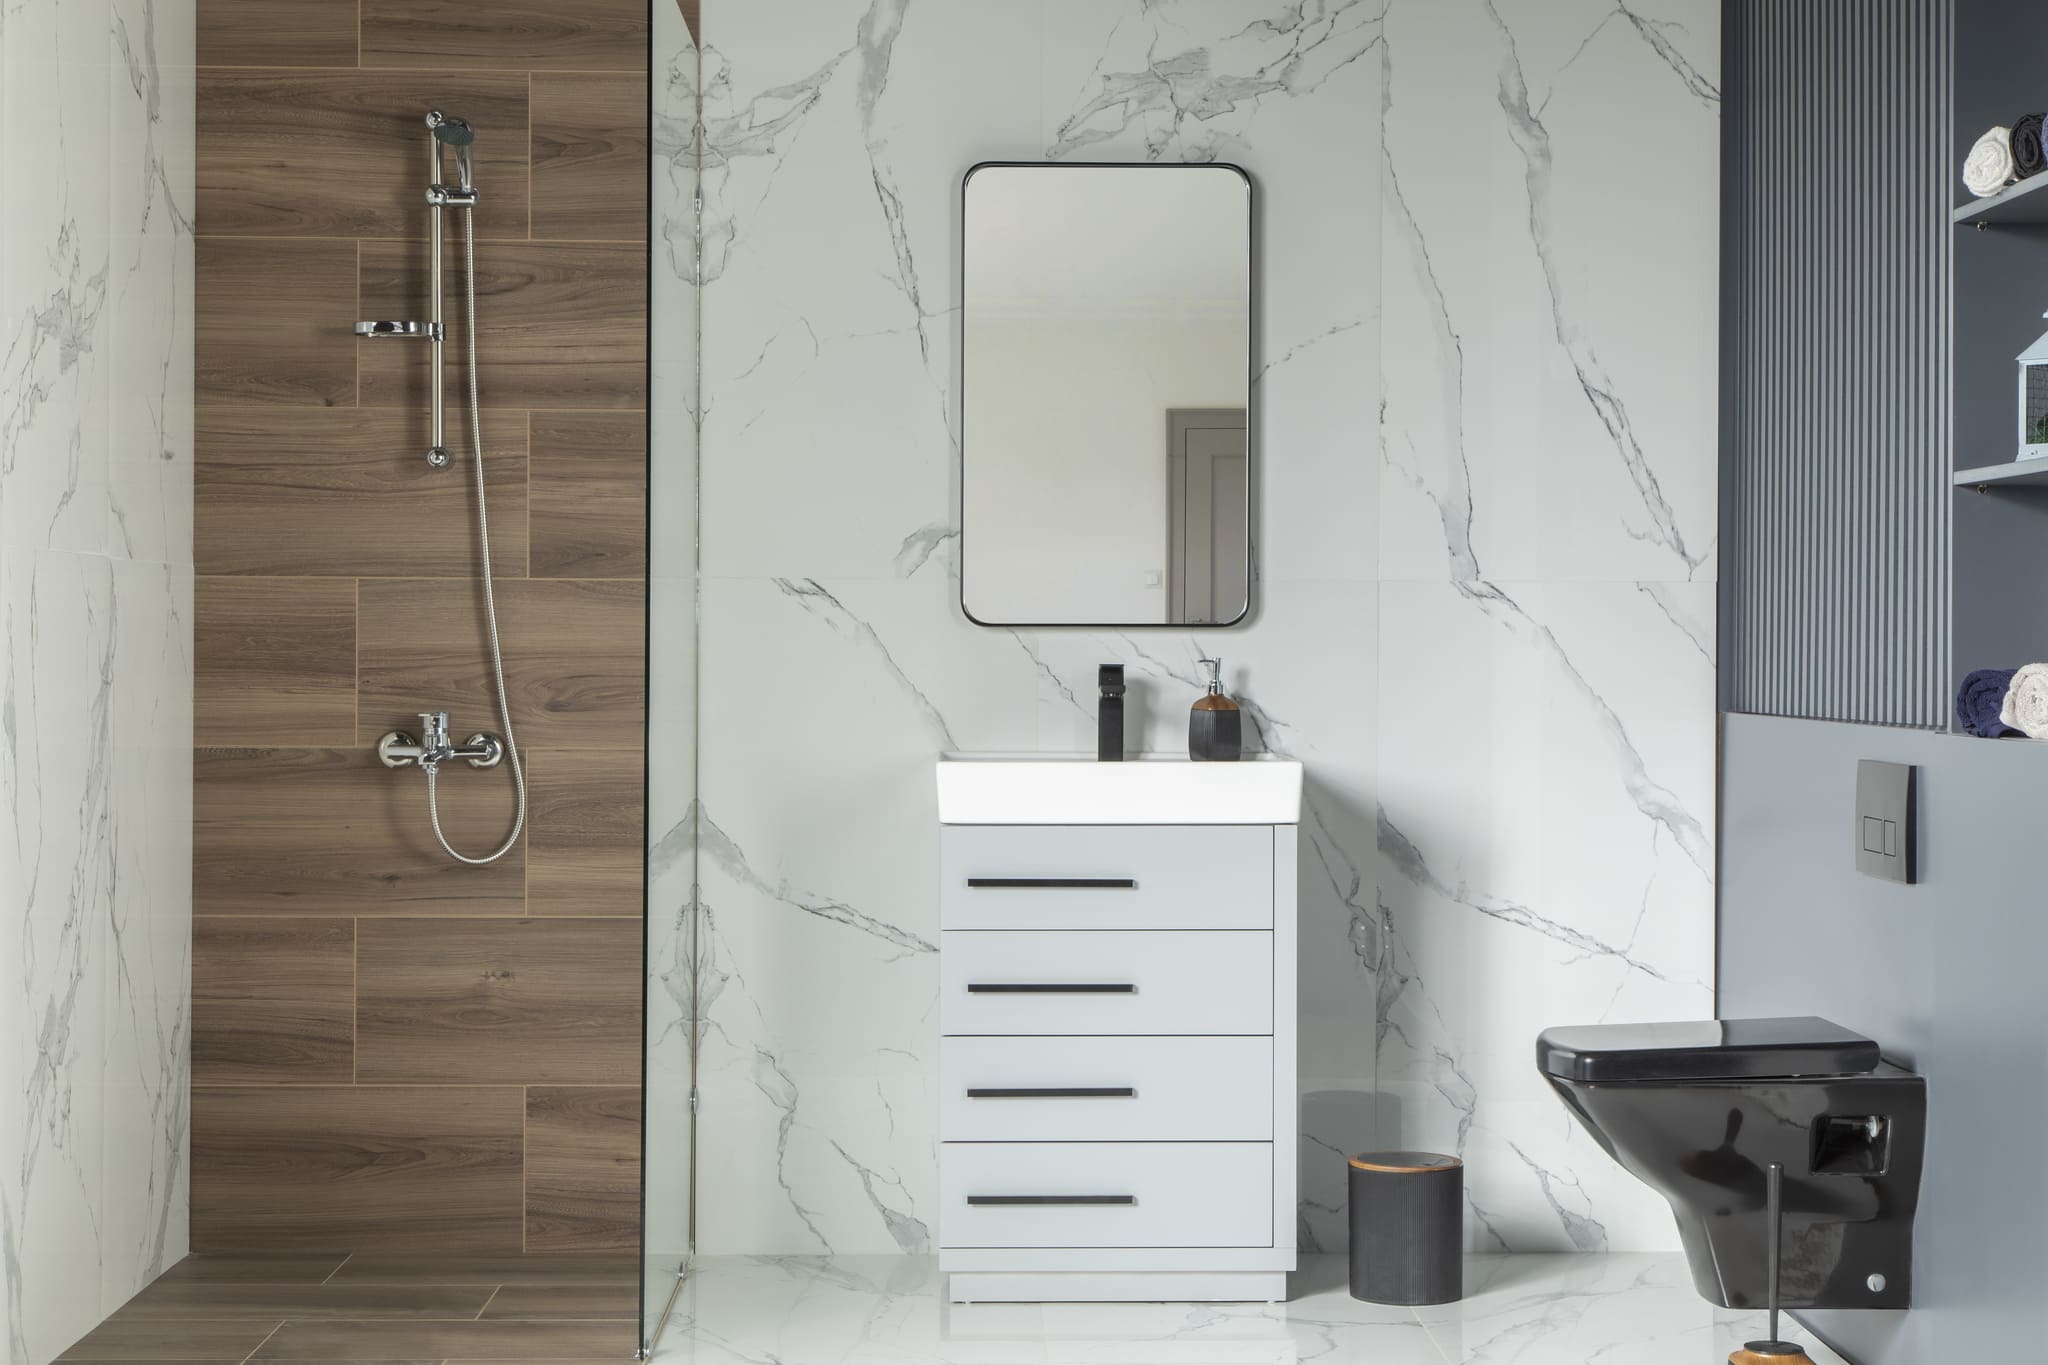 Adora Bathroom Vanity Homelero 24" #size_24" #color_light grey